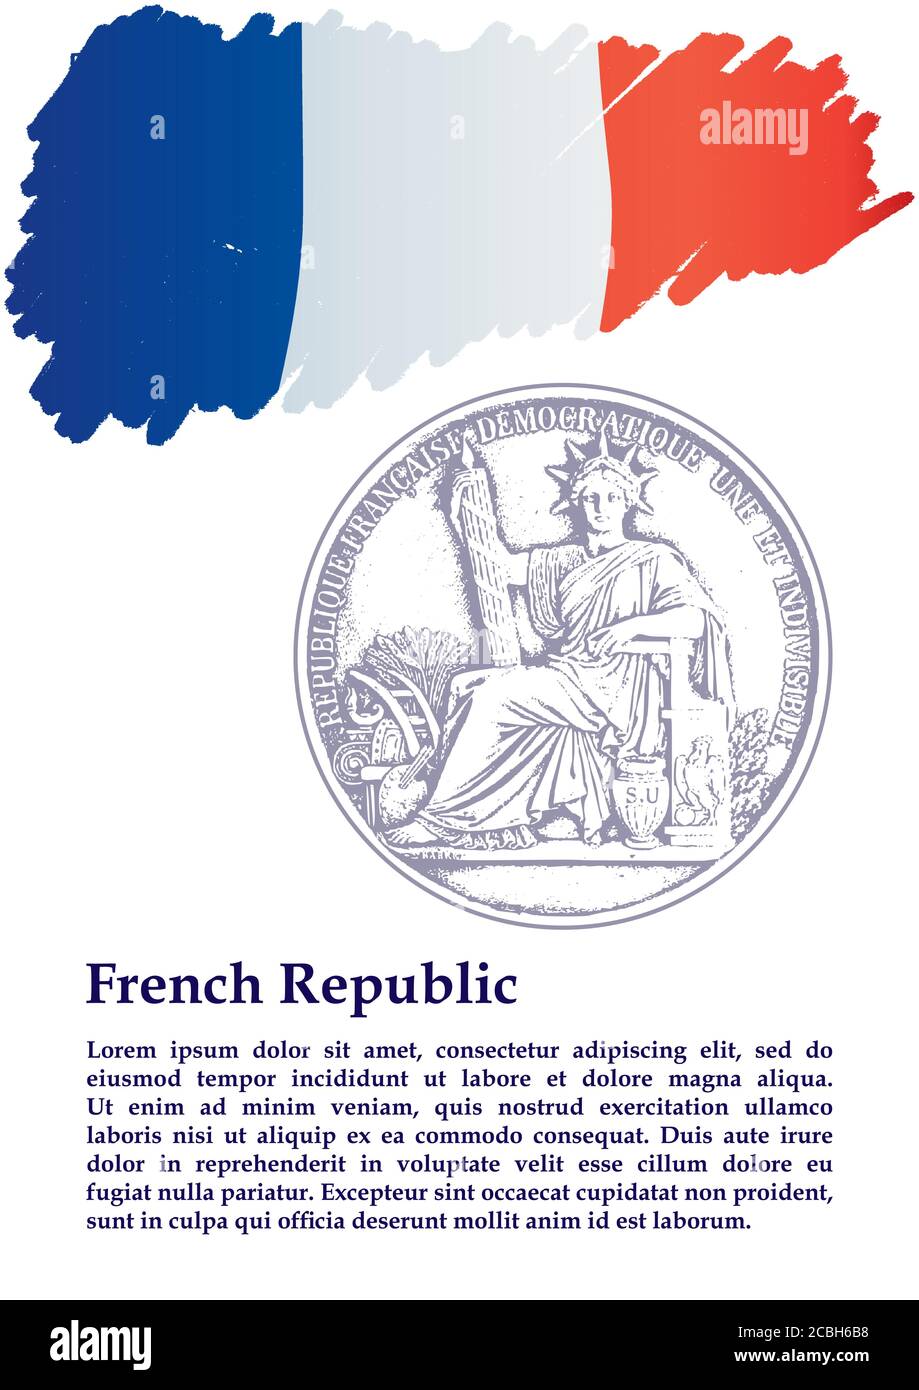 Großes Siegel Frankreichs, Flagge Frankreichs, Französische Republik. Vorlage für Award Design, ein offizielles Dokument mit der Flagge Frankreichs. Stock Vektor